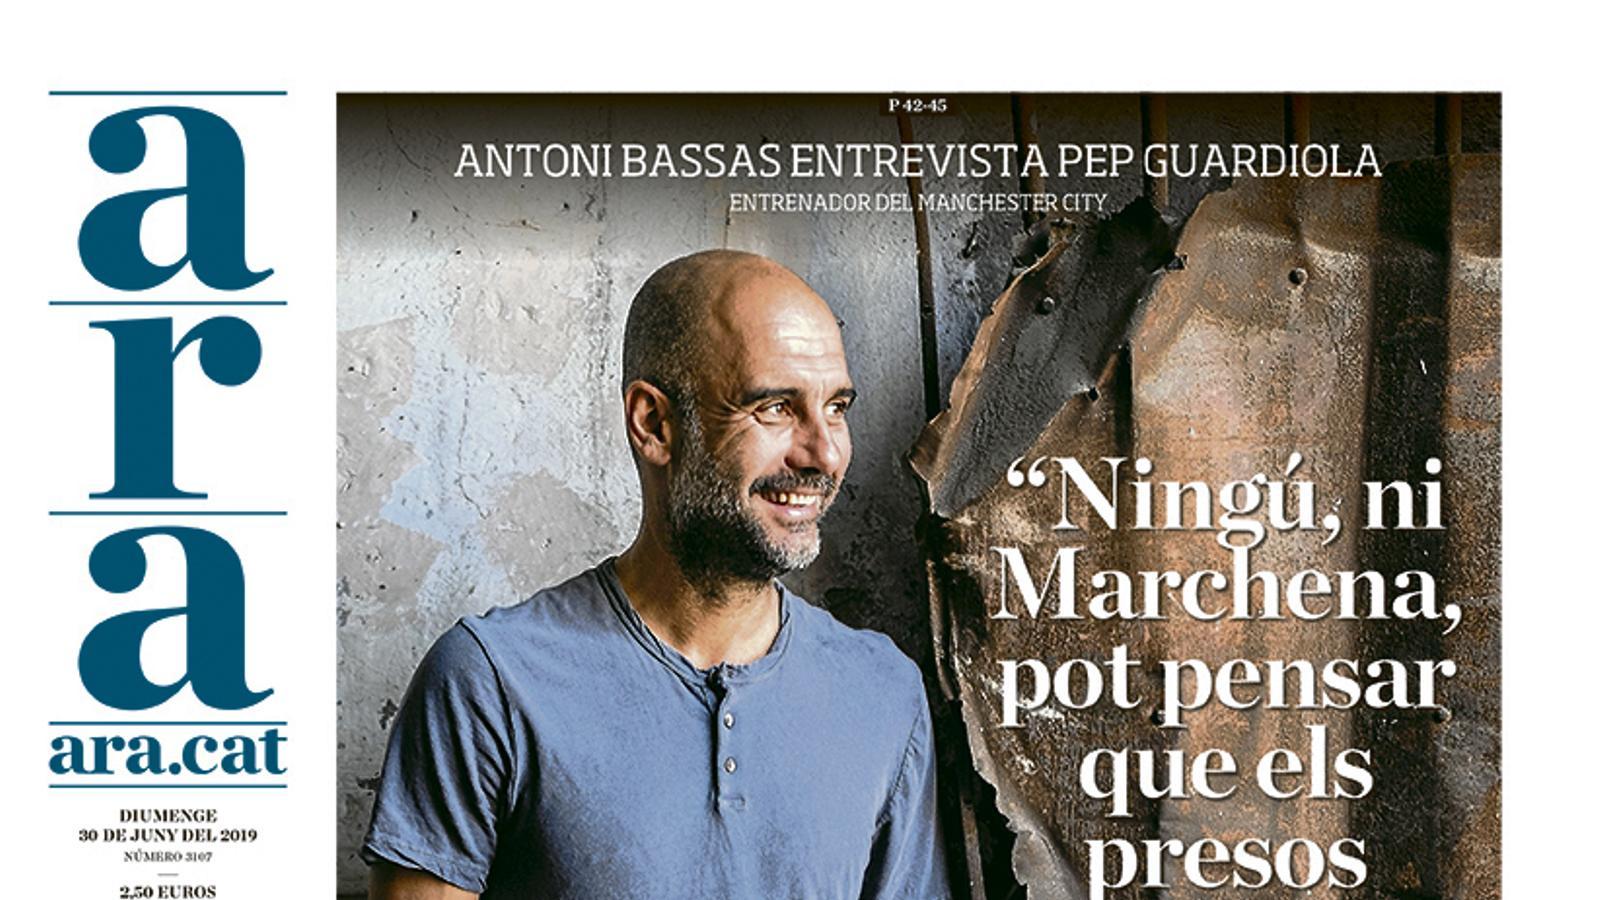 Pep Guardiola: "Ningú, ni Marchena, pot pensar que els presos mereixen passar tantss anys a la presó"